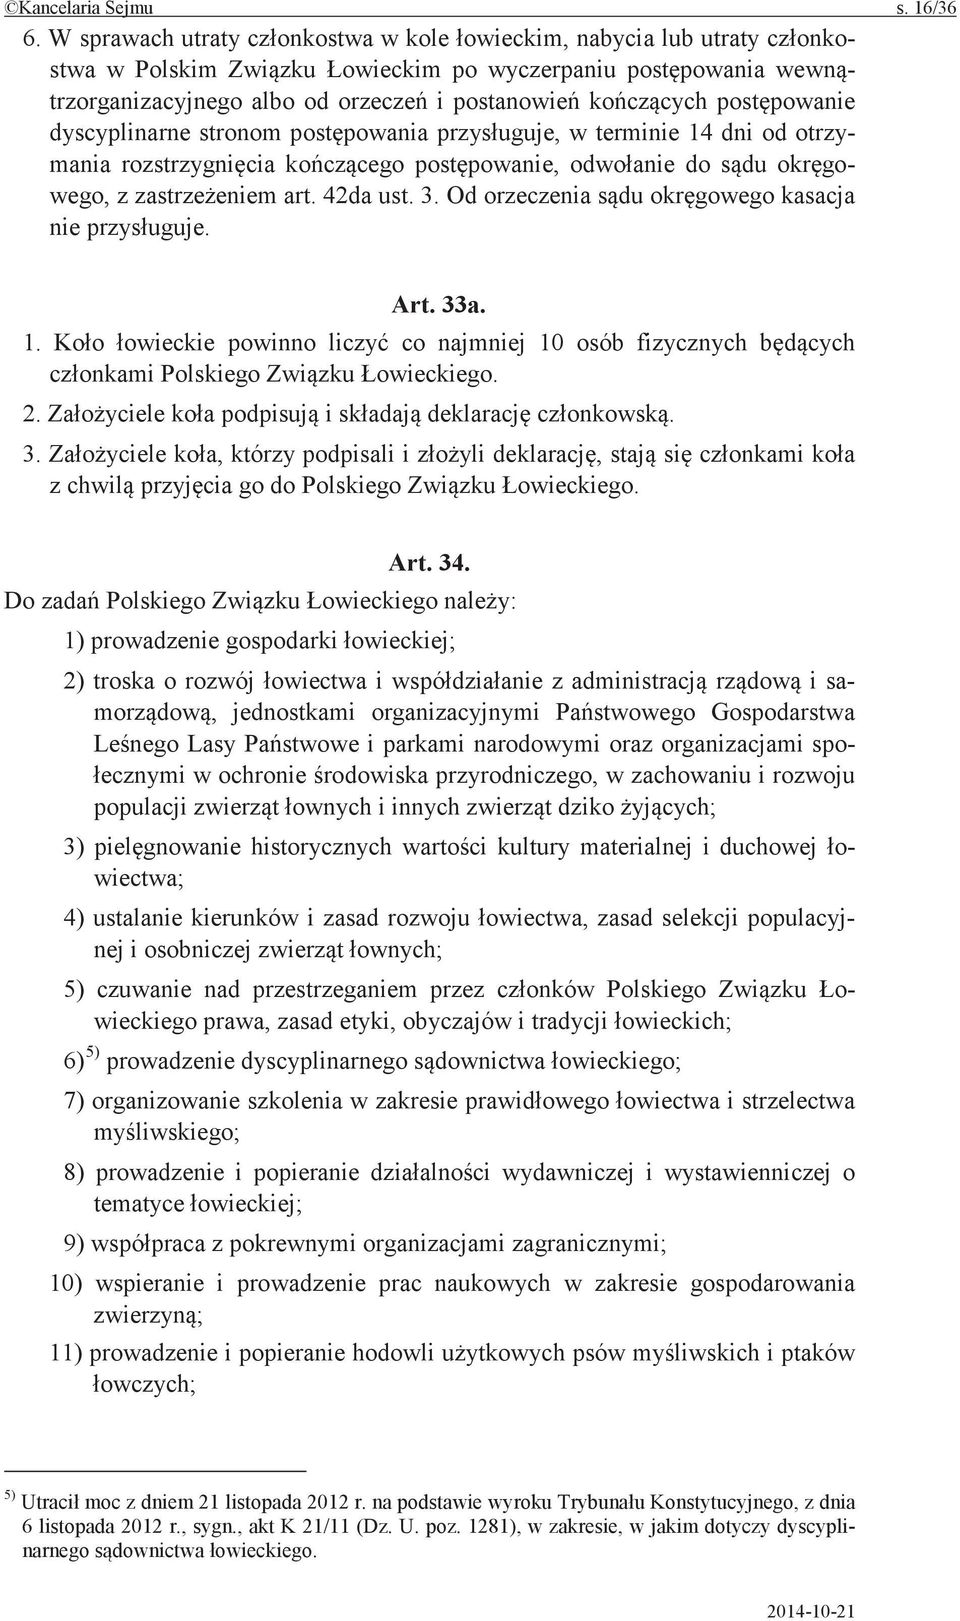 Od orzeczenia kasacja nie Art. 33a. 1. powinno co najmniej 10 osób fizycznych Polskiego 2. i 3. którzy podpisali i z go do Polskiego Art. 34.